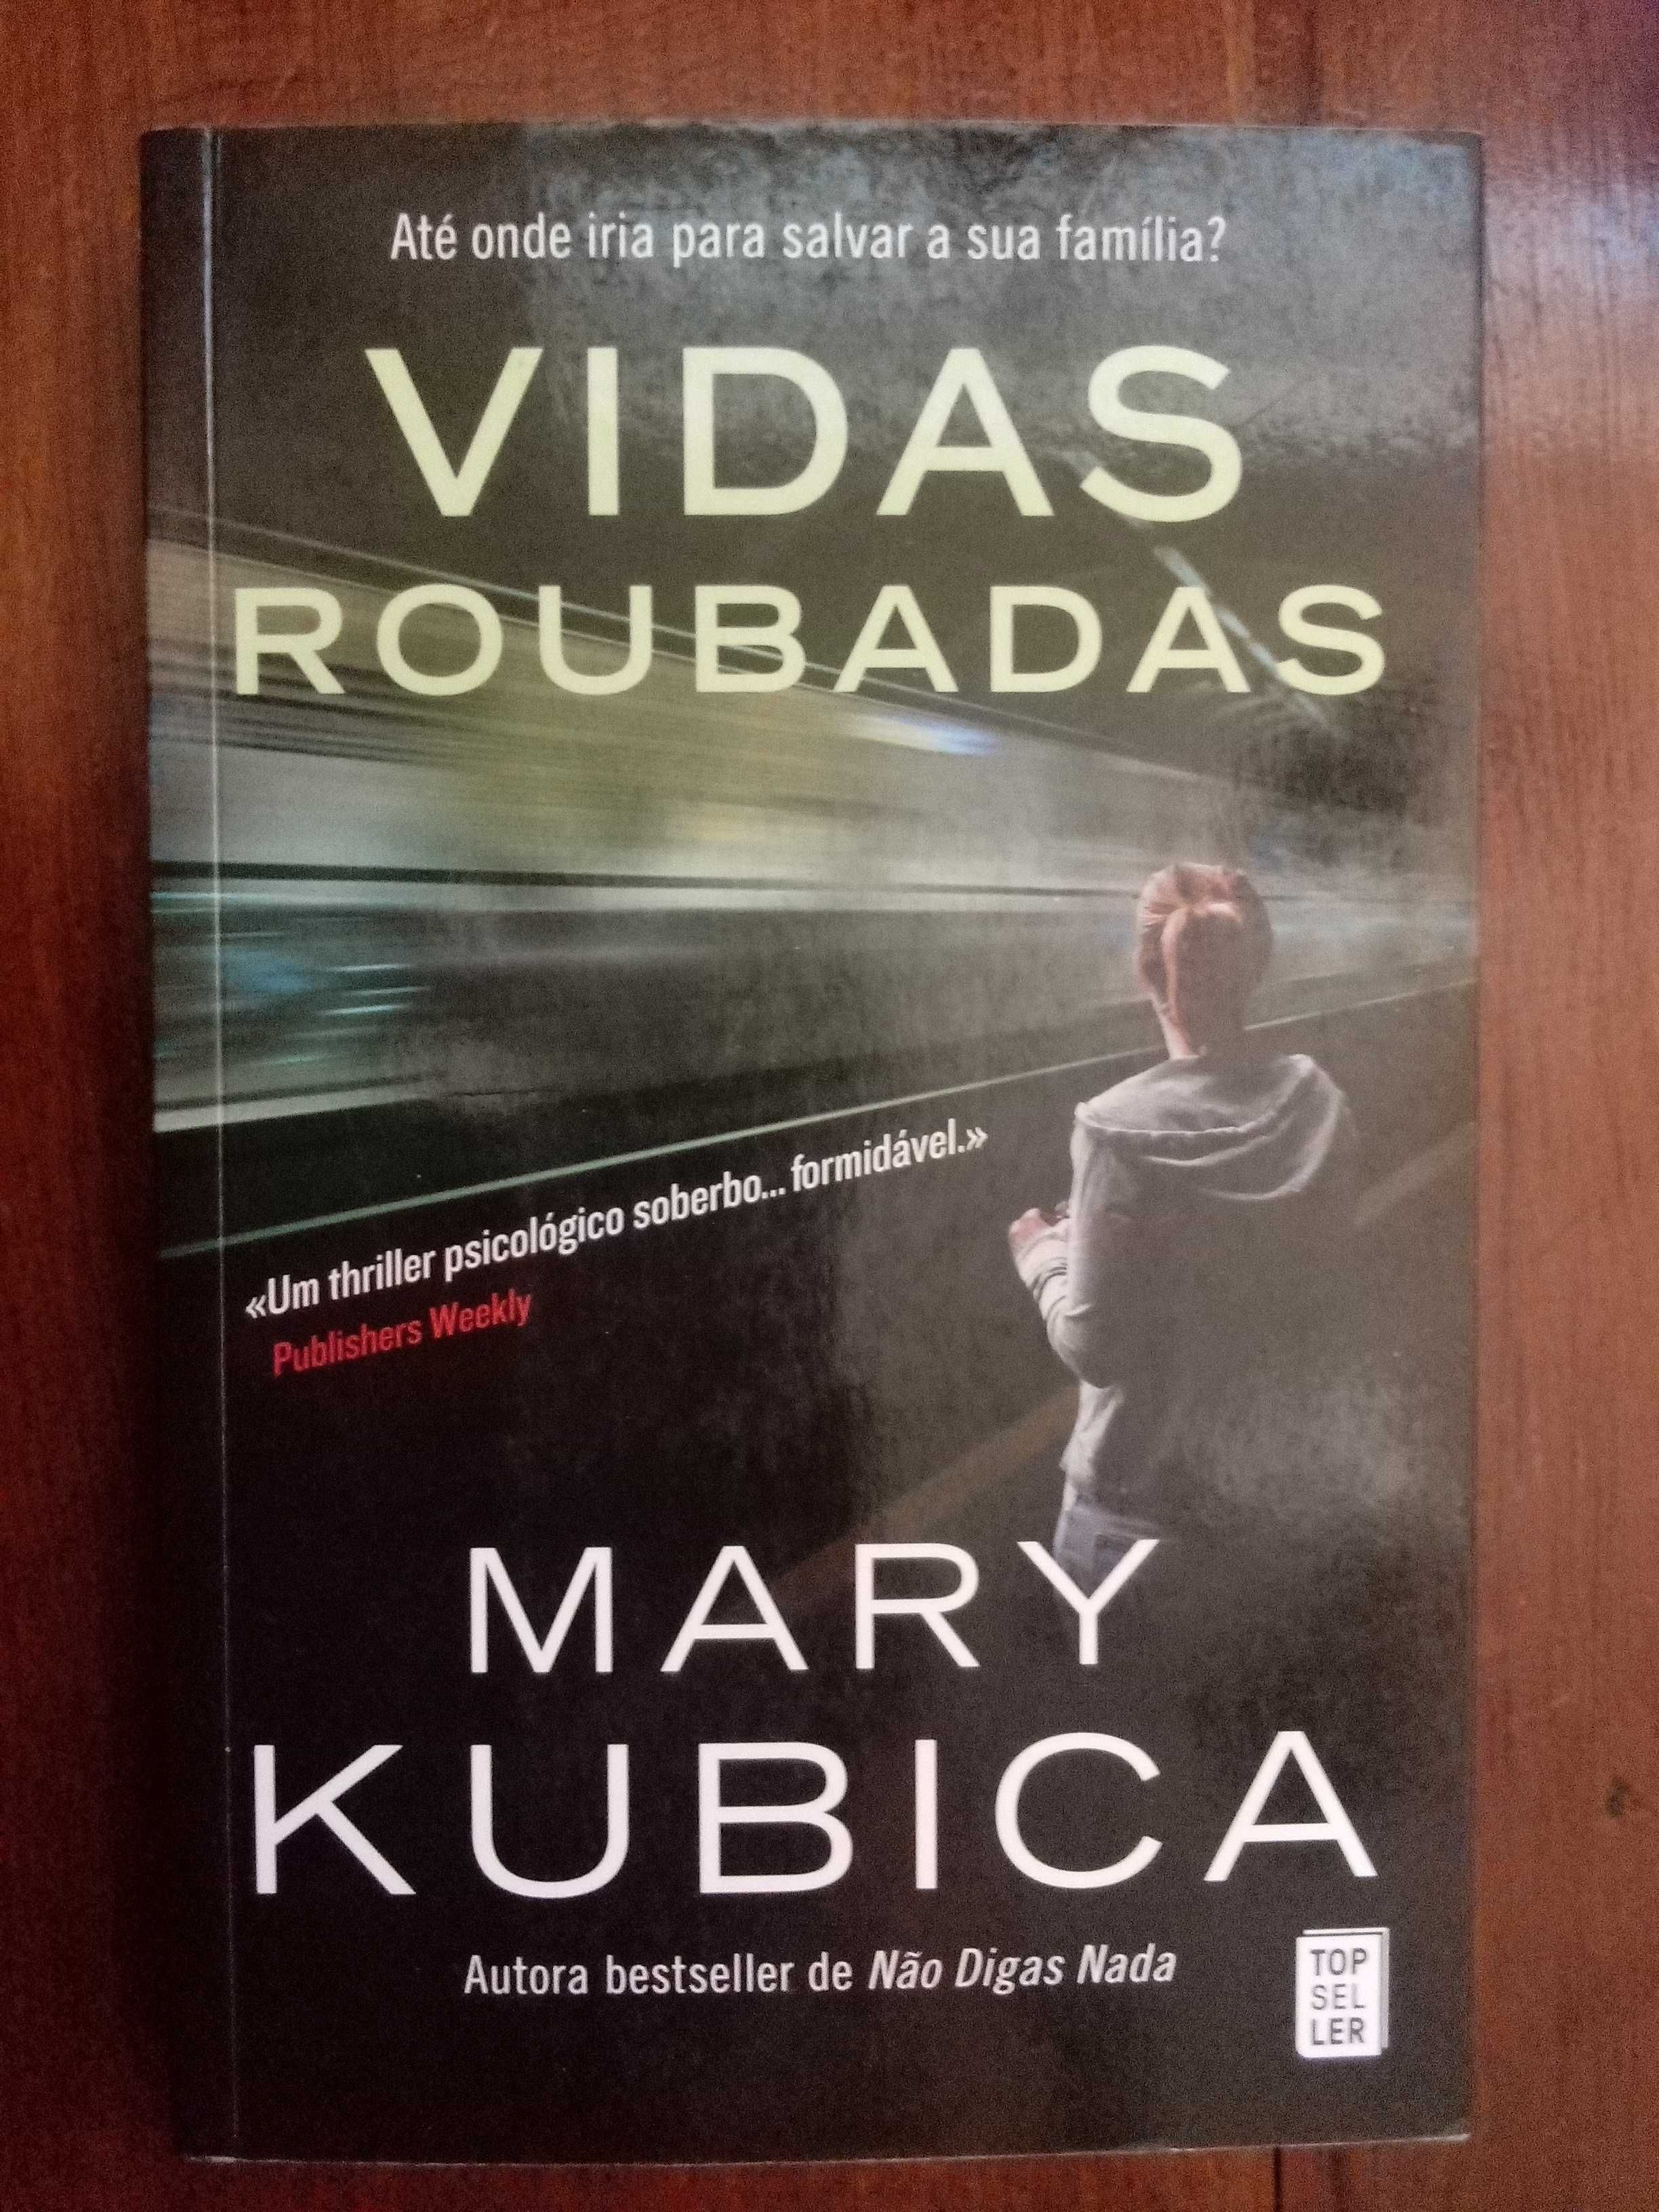 Mary Kubica - Vidas roubadas